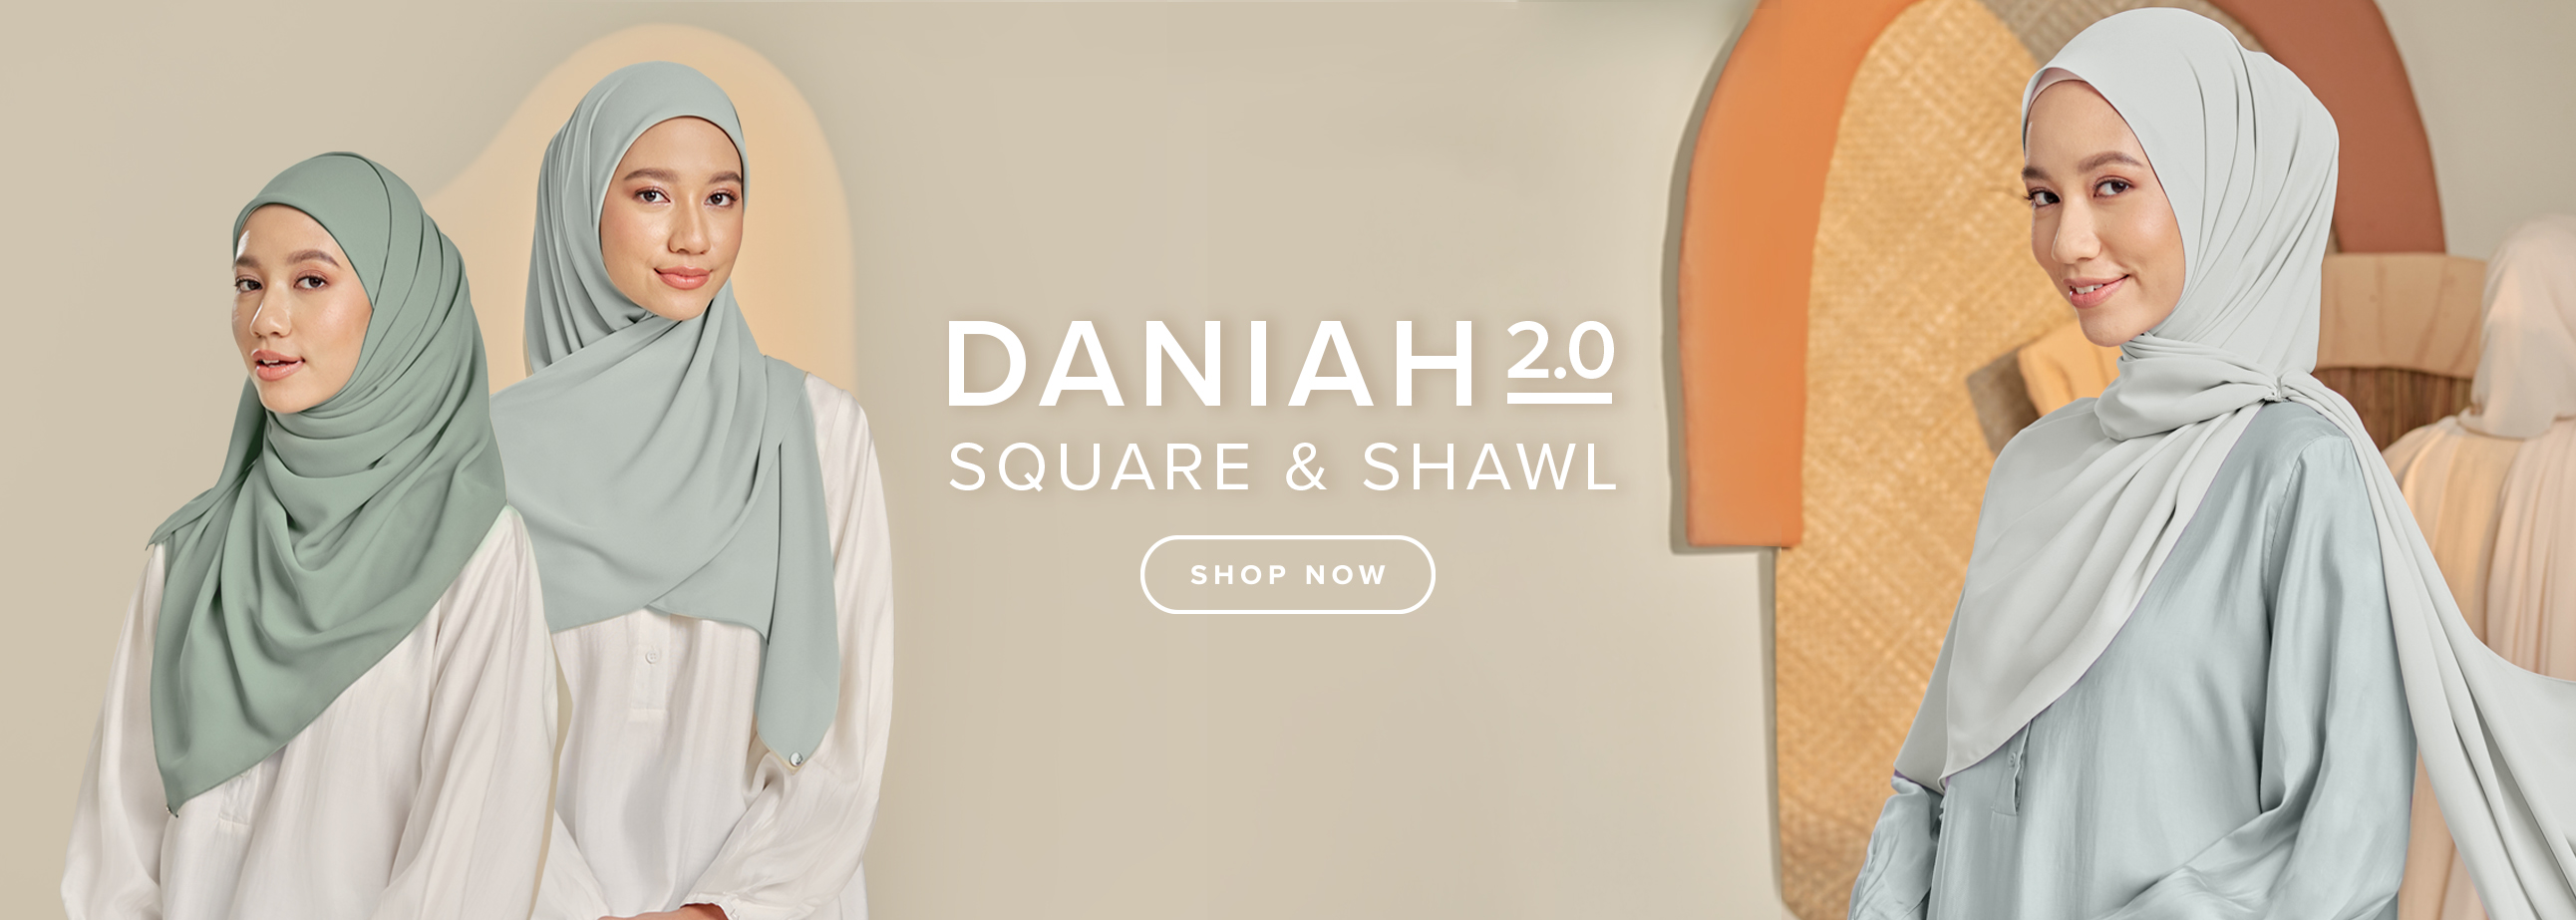 DANIAH SHAWL & SQUARE 2.0  2022